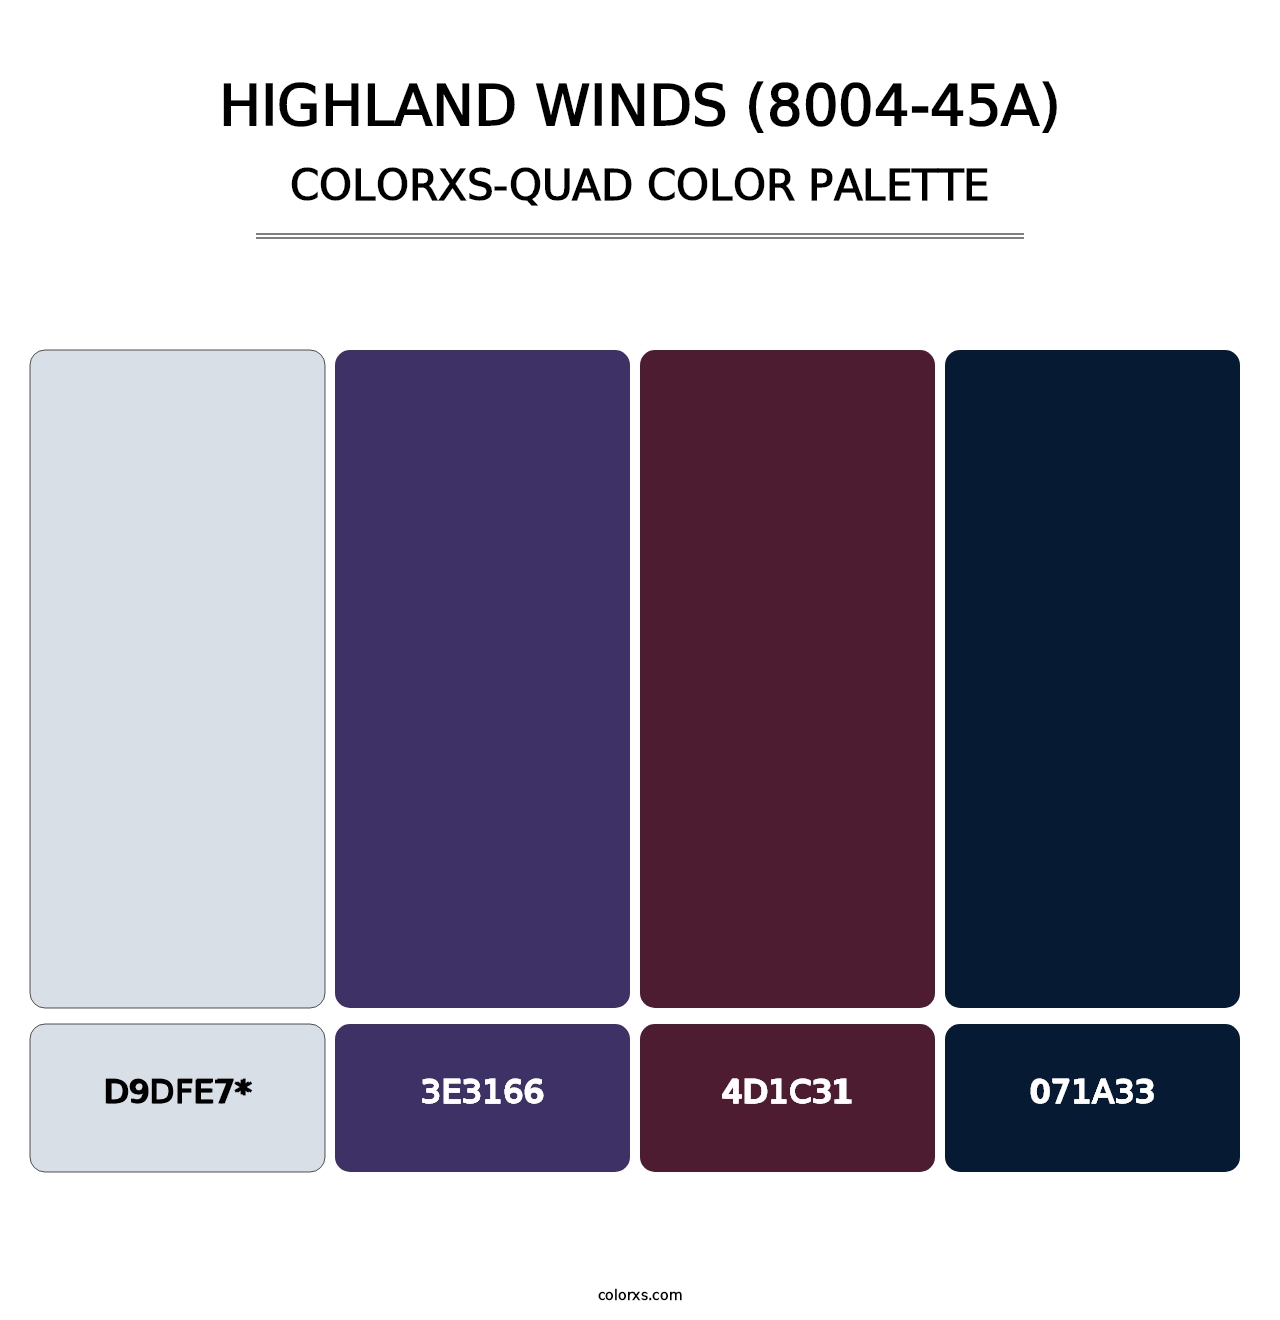 Highland Winds (8004-45A) - Colorxs Quad Palette